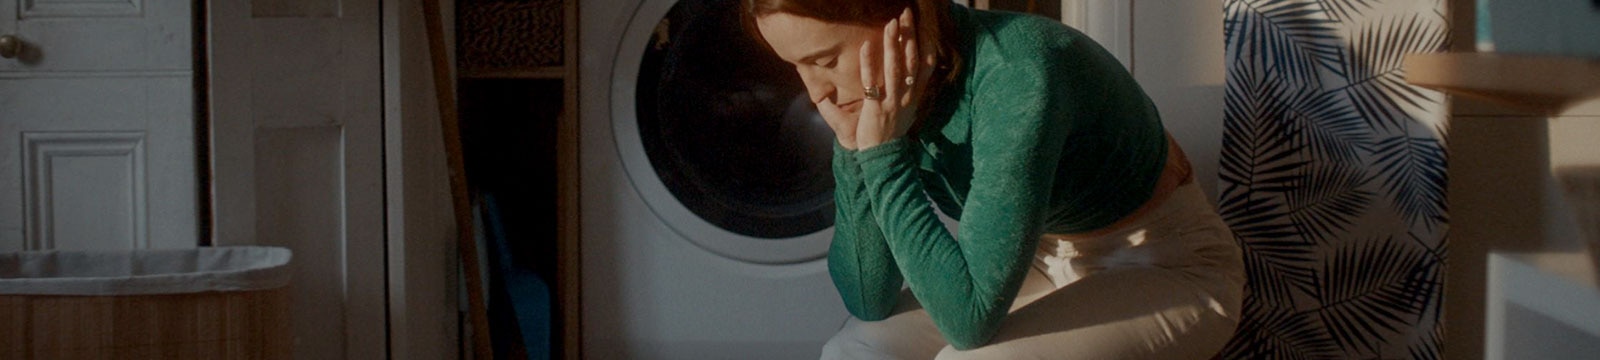 Una mujer agotada sentada sola en una lavandería